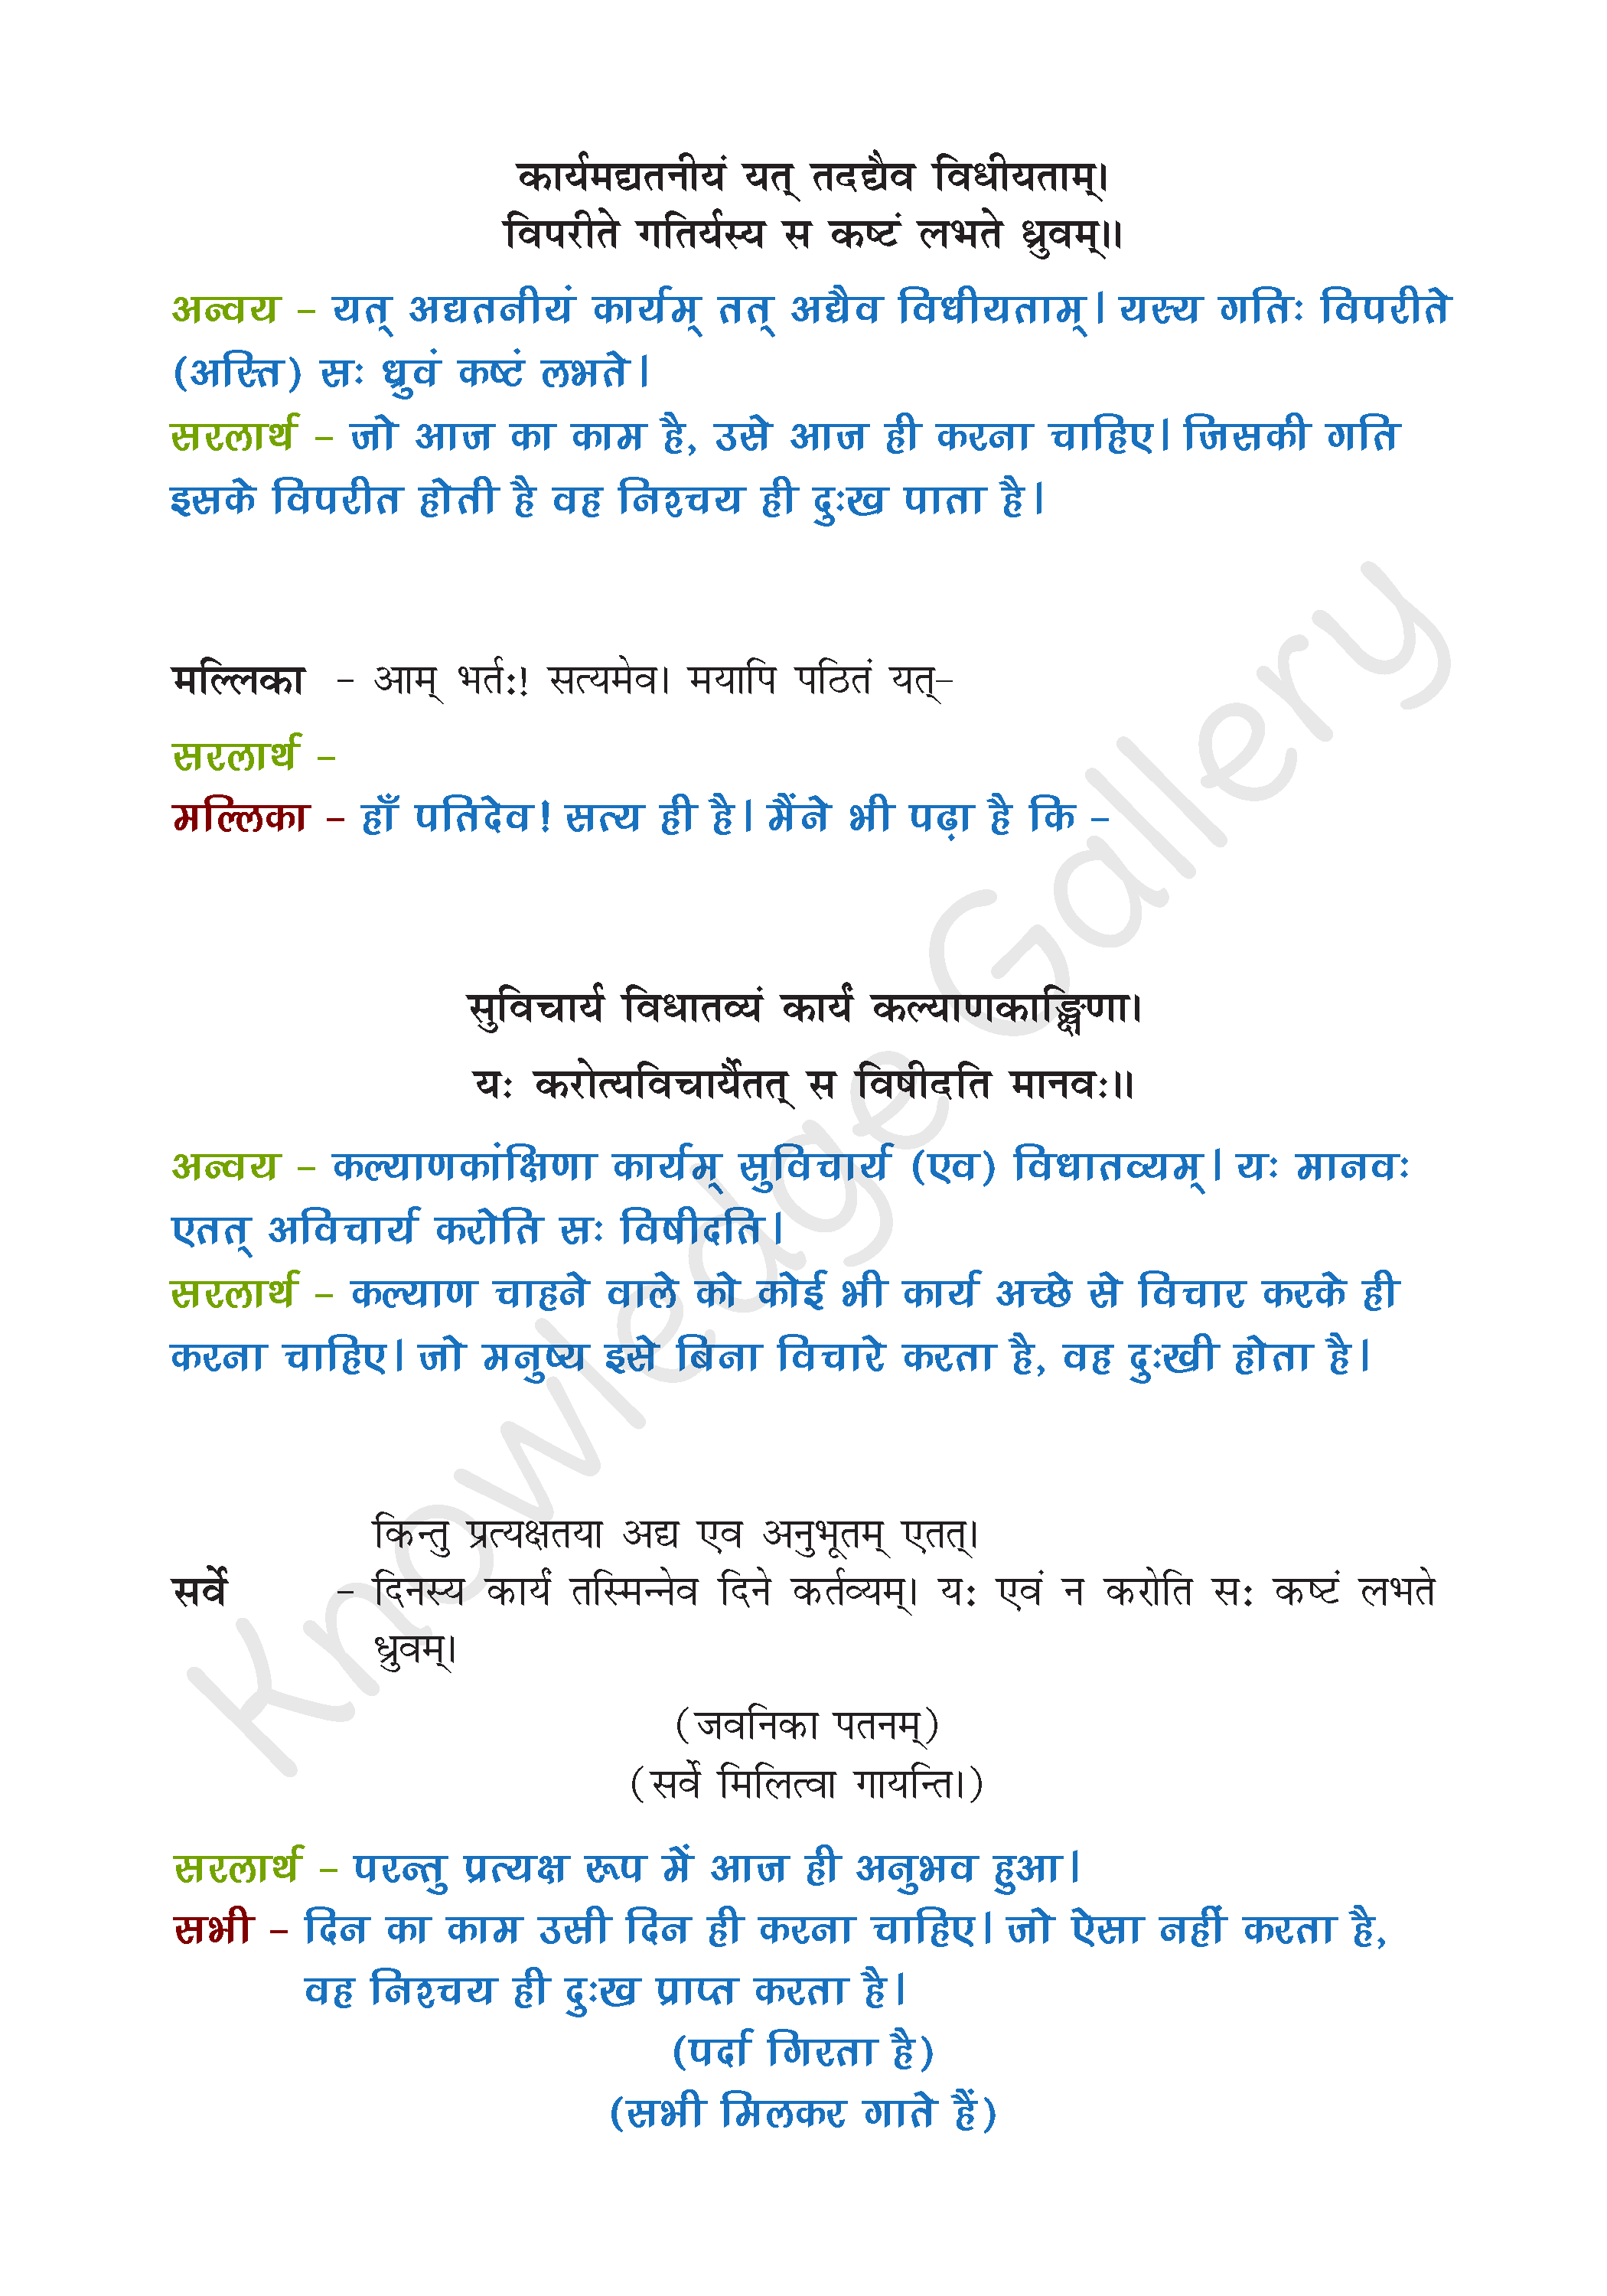 NCERT Solution For Class 9 Sanskrit Chapter 3 part 8